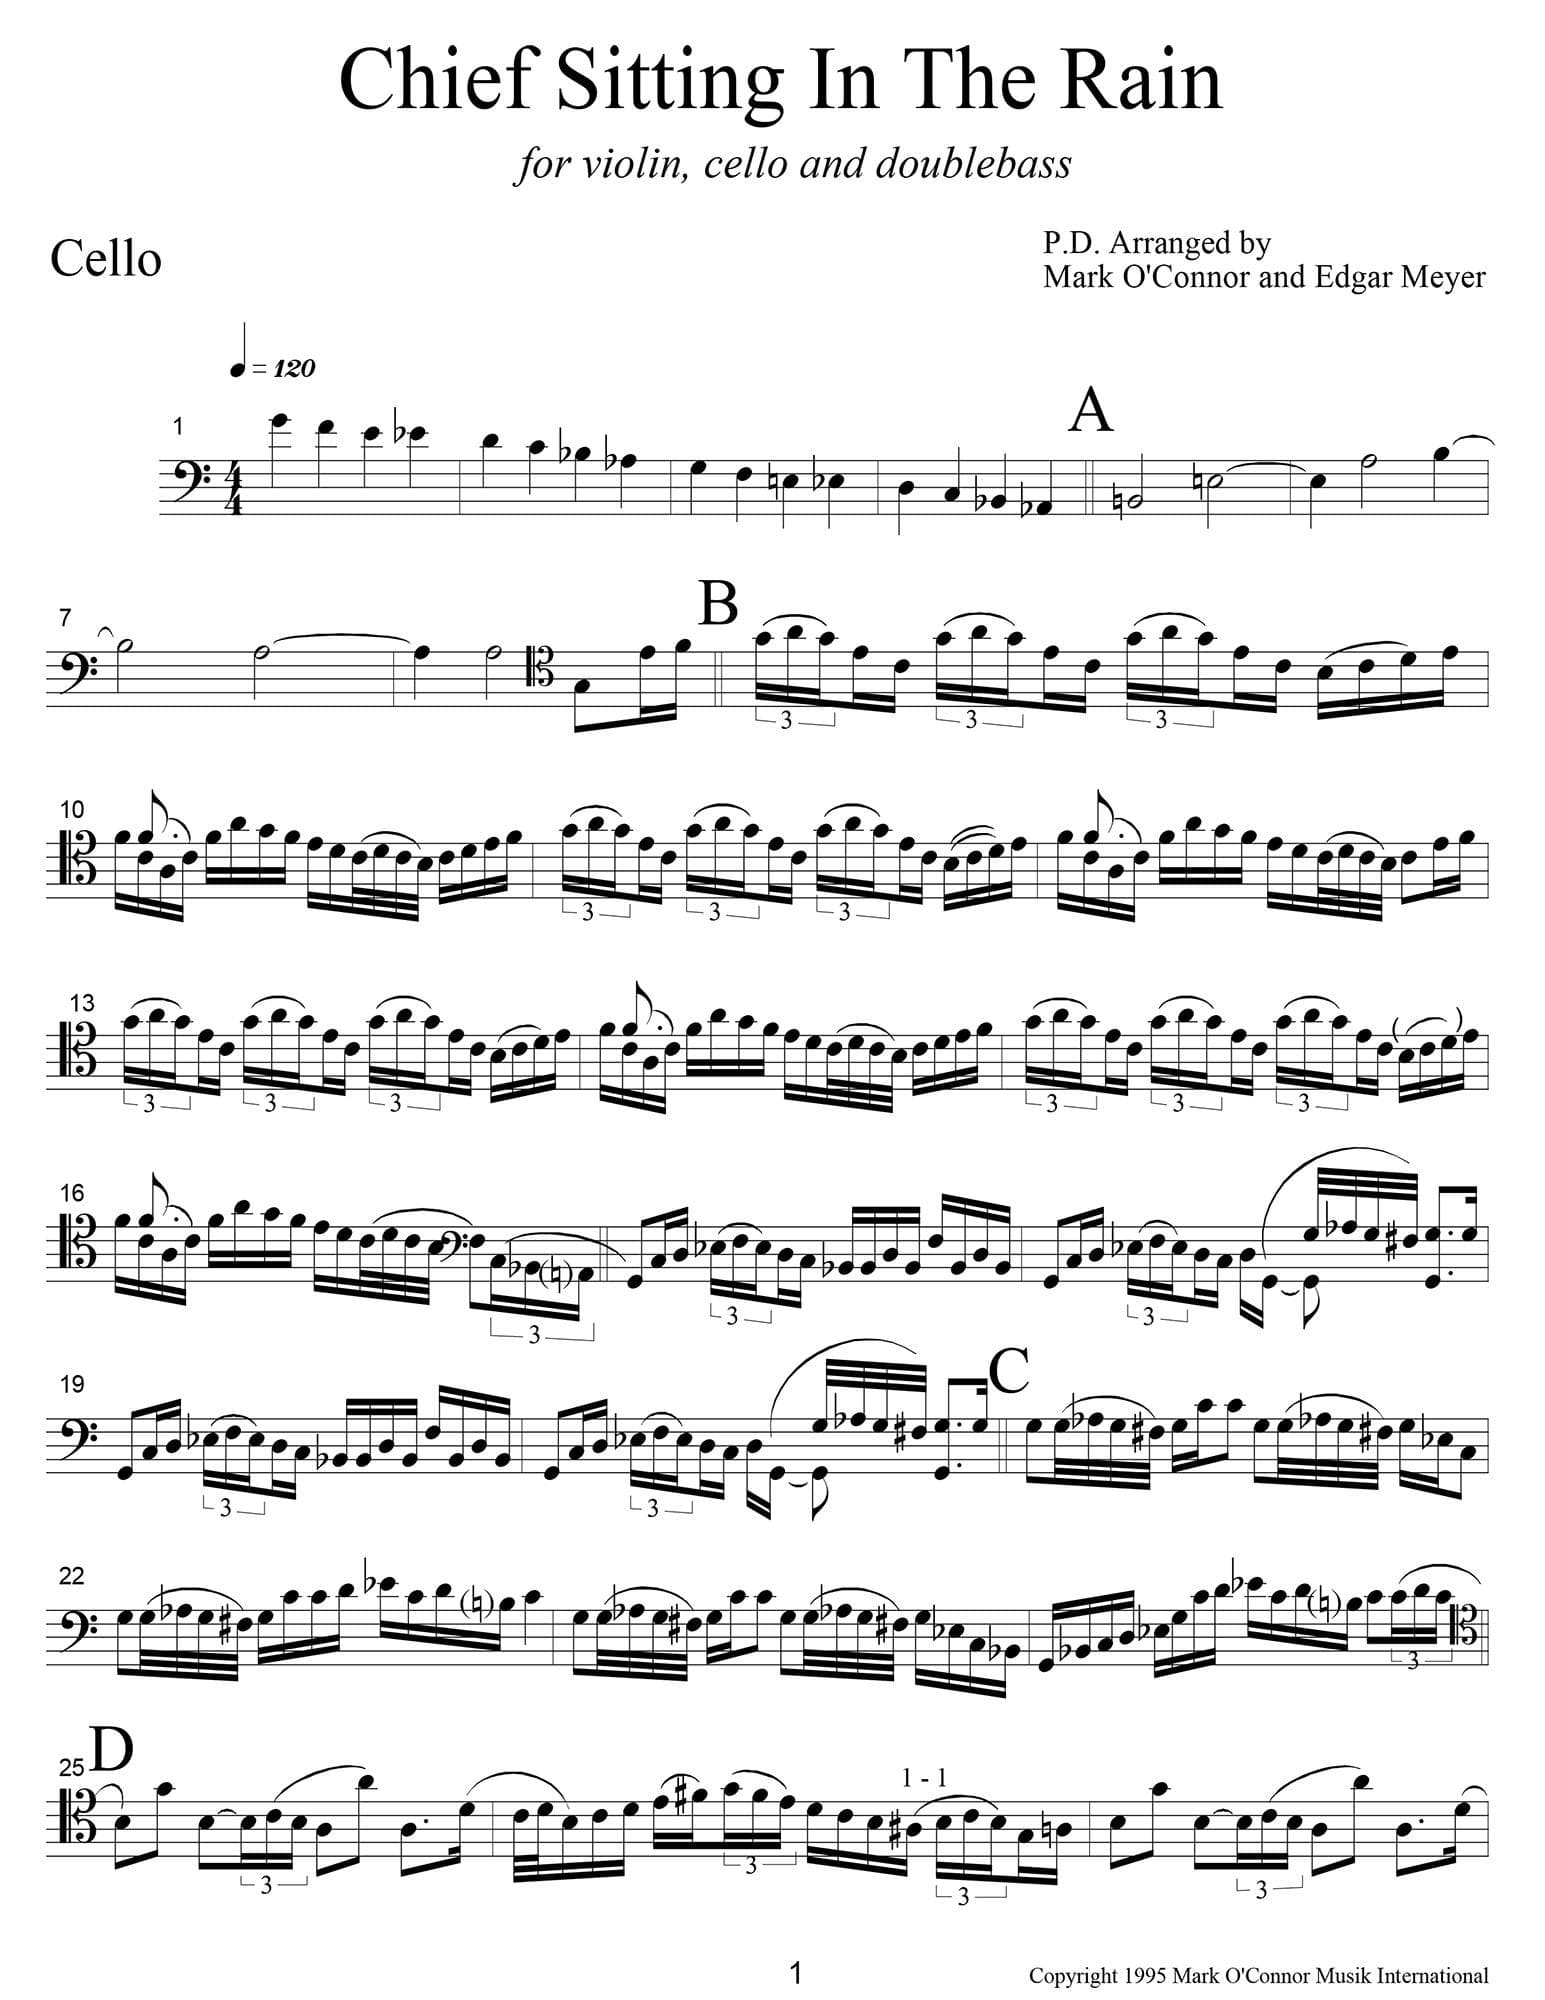 O'Connor, Mark - Chief Sitting In The Rain for Violin, Cello, and Bass - Cello - Digital Download